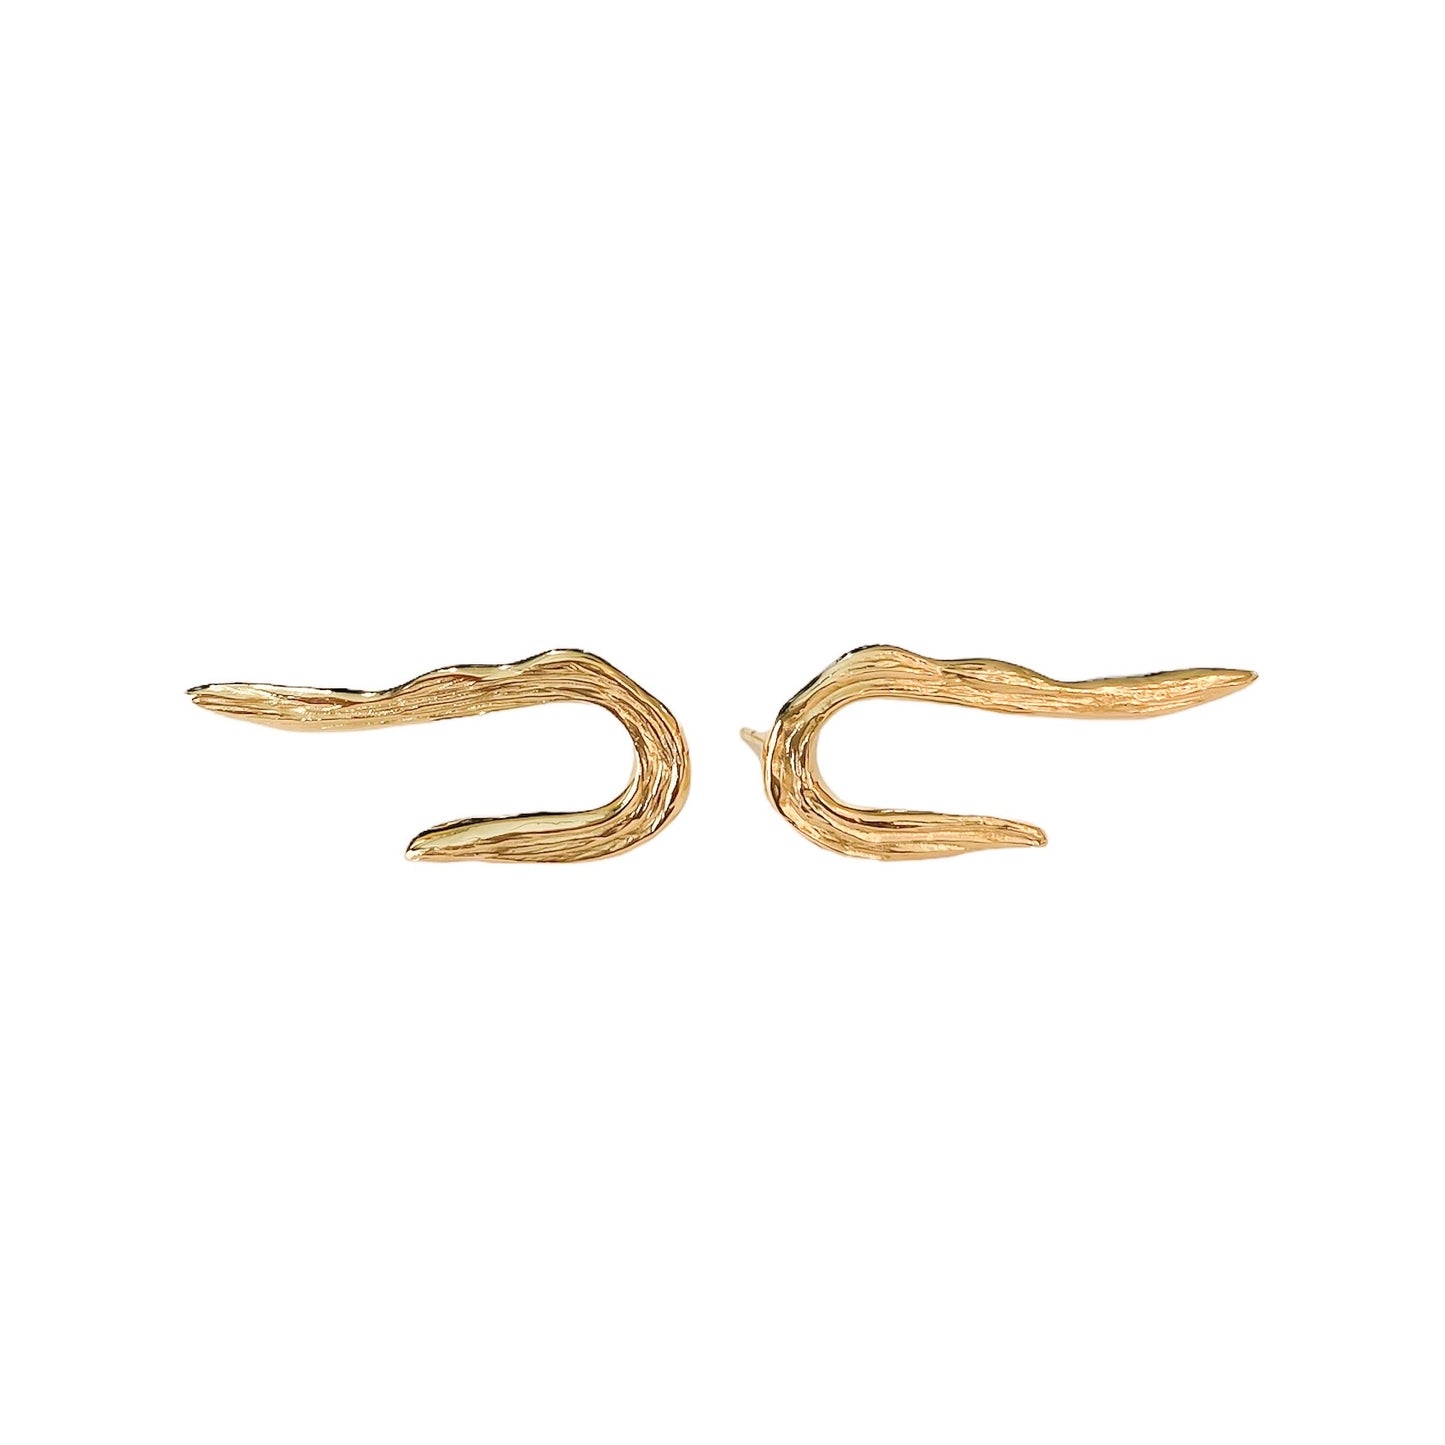 Simone Noa Oceania goldplated silver earrings